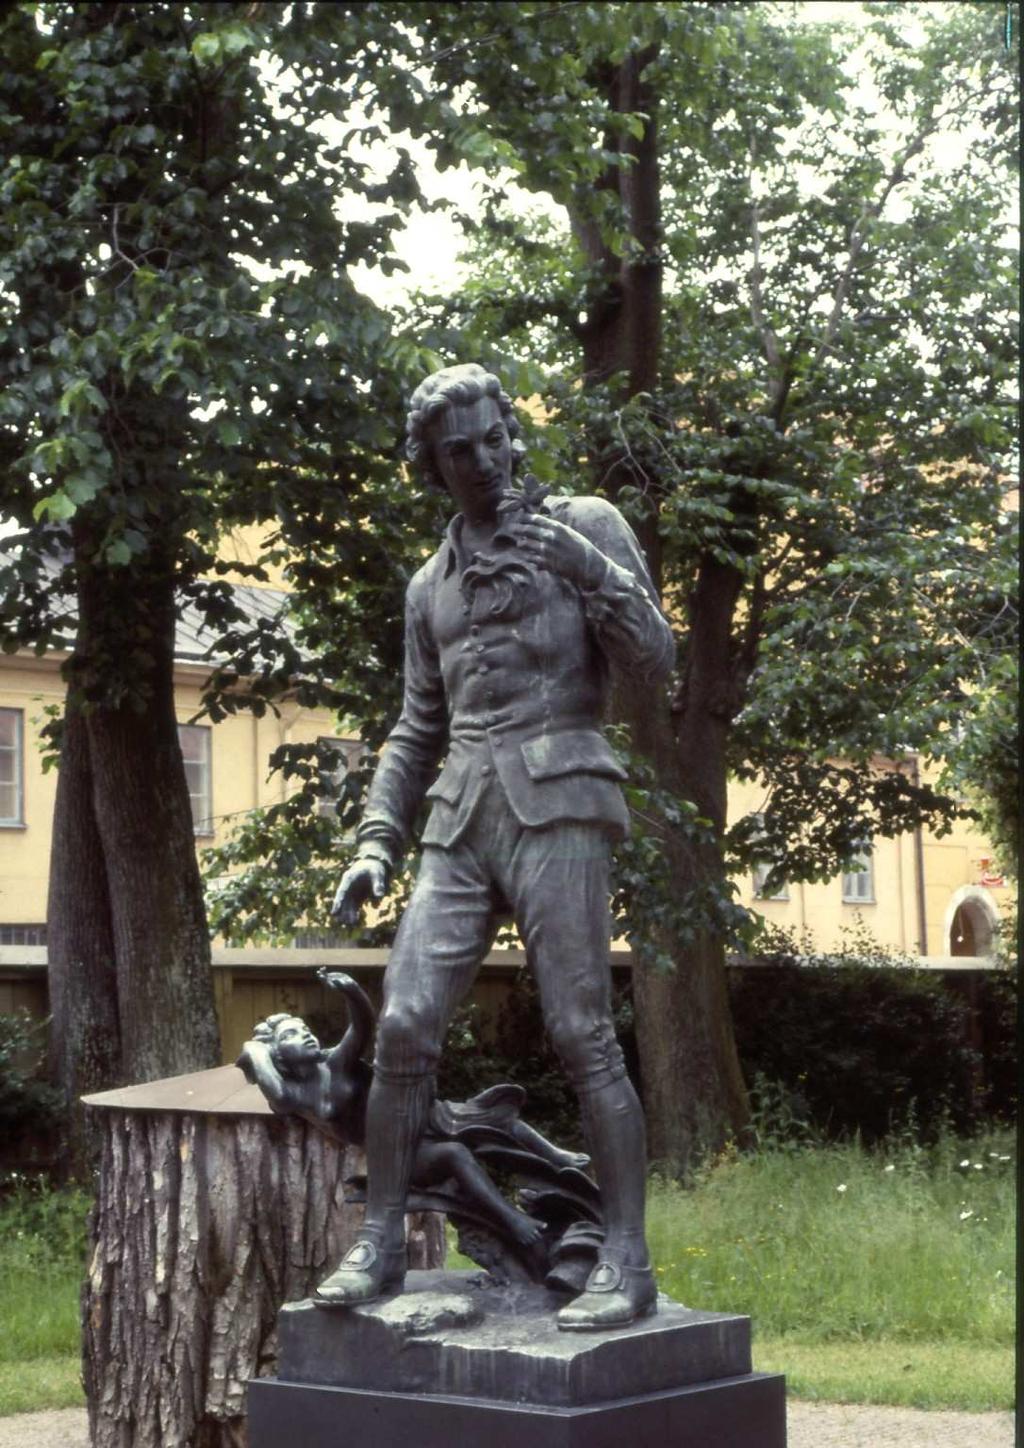 300 ÉVE SZÜLETETT CARL VON LINNÉ (1707-1778) nyával és tanácsaival otthon kell szolgálnia népét. Hő maradt hazájához, nem fogadta el a kitüntetı katedrákat.